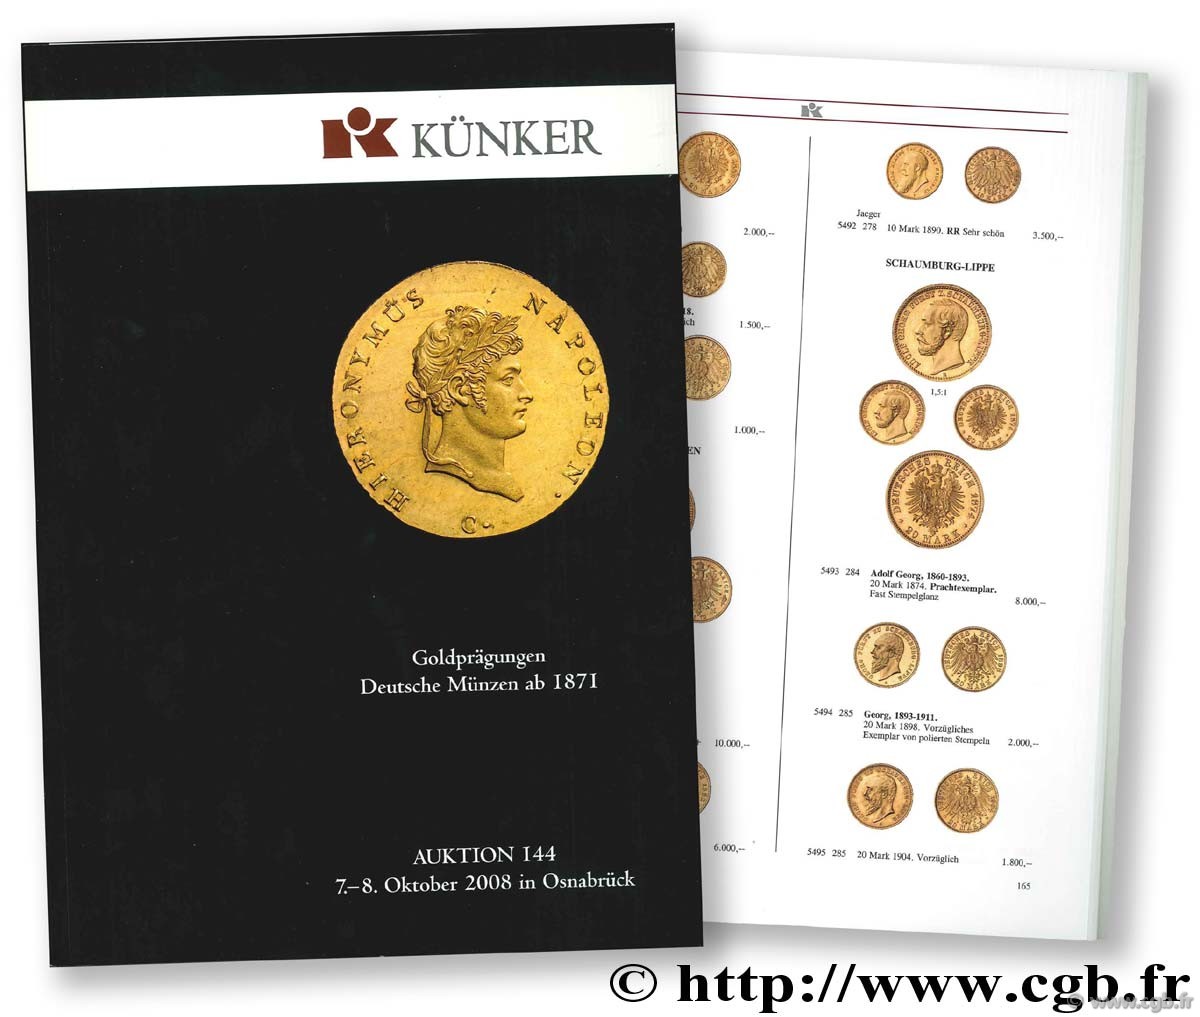 Goldprägungen, Deutsche Münzen ab 1871, Auktion 144, 7.-8. Oktober 2008 in Osnabrück KÜNKER